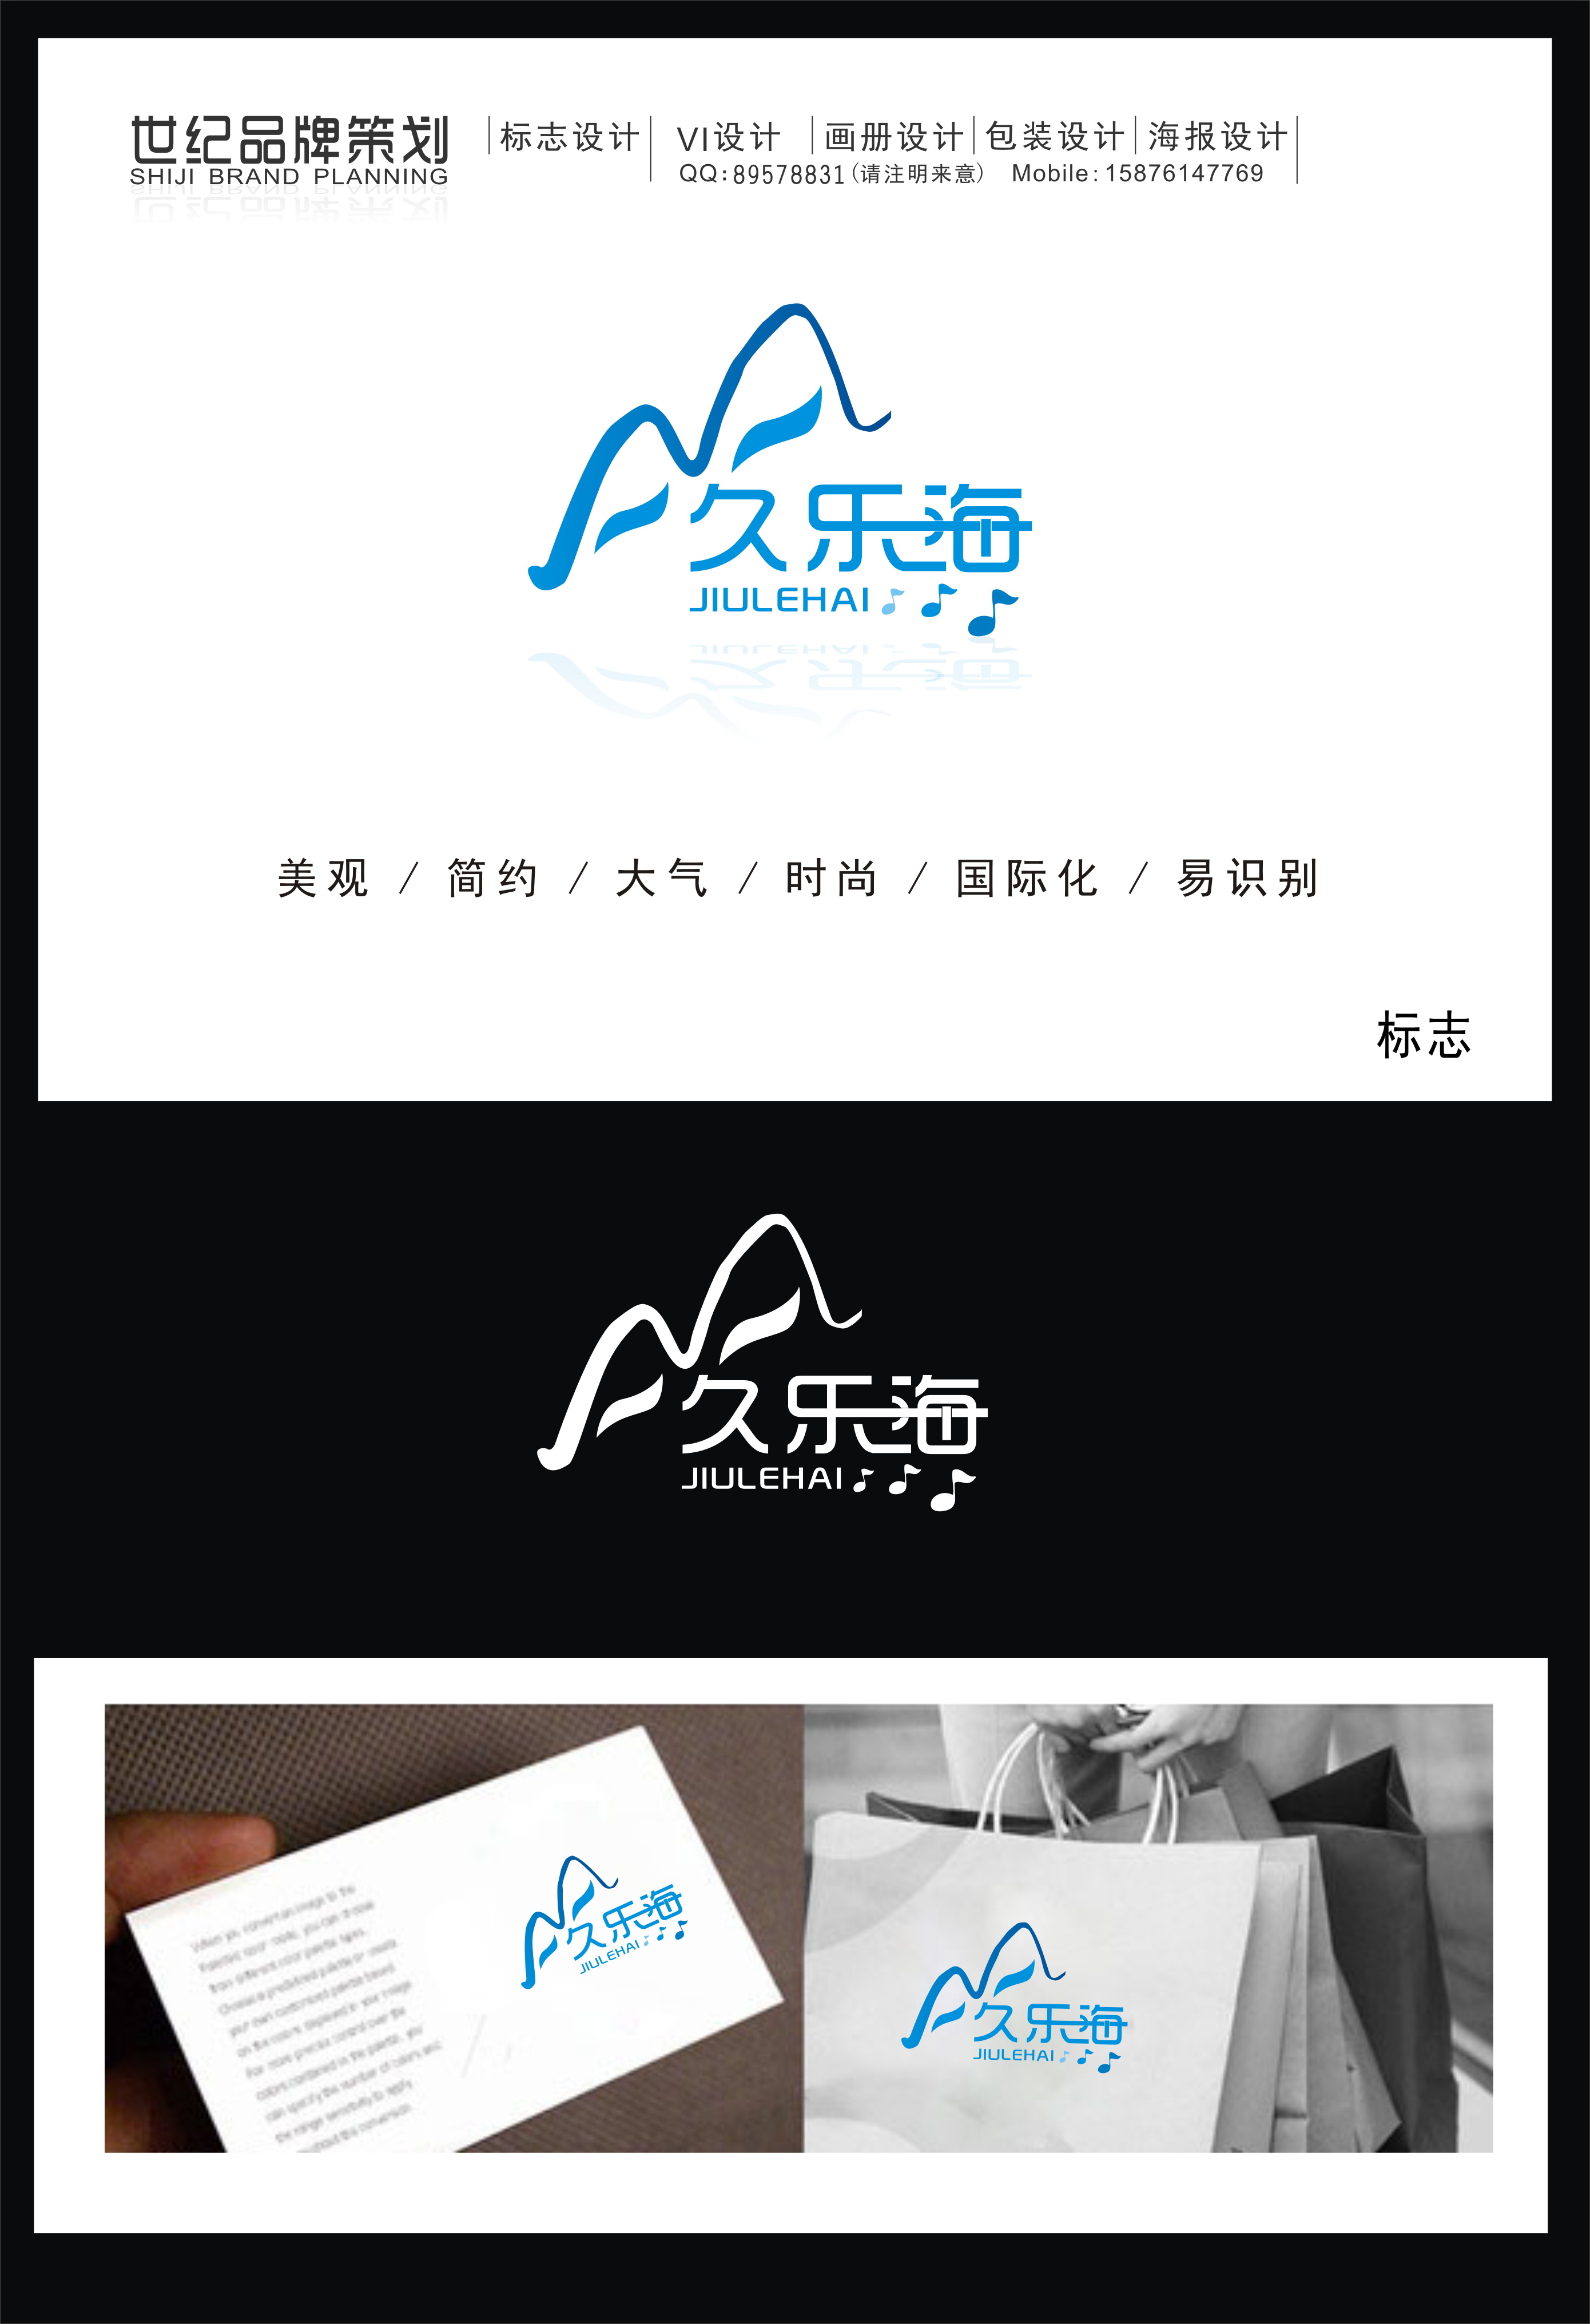 久_乐_海音乐文化品牌logo设计.